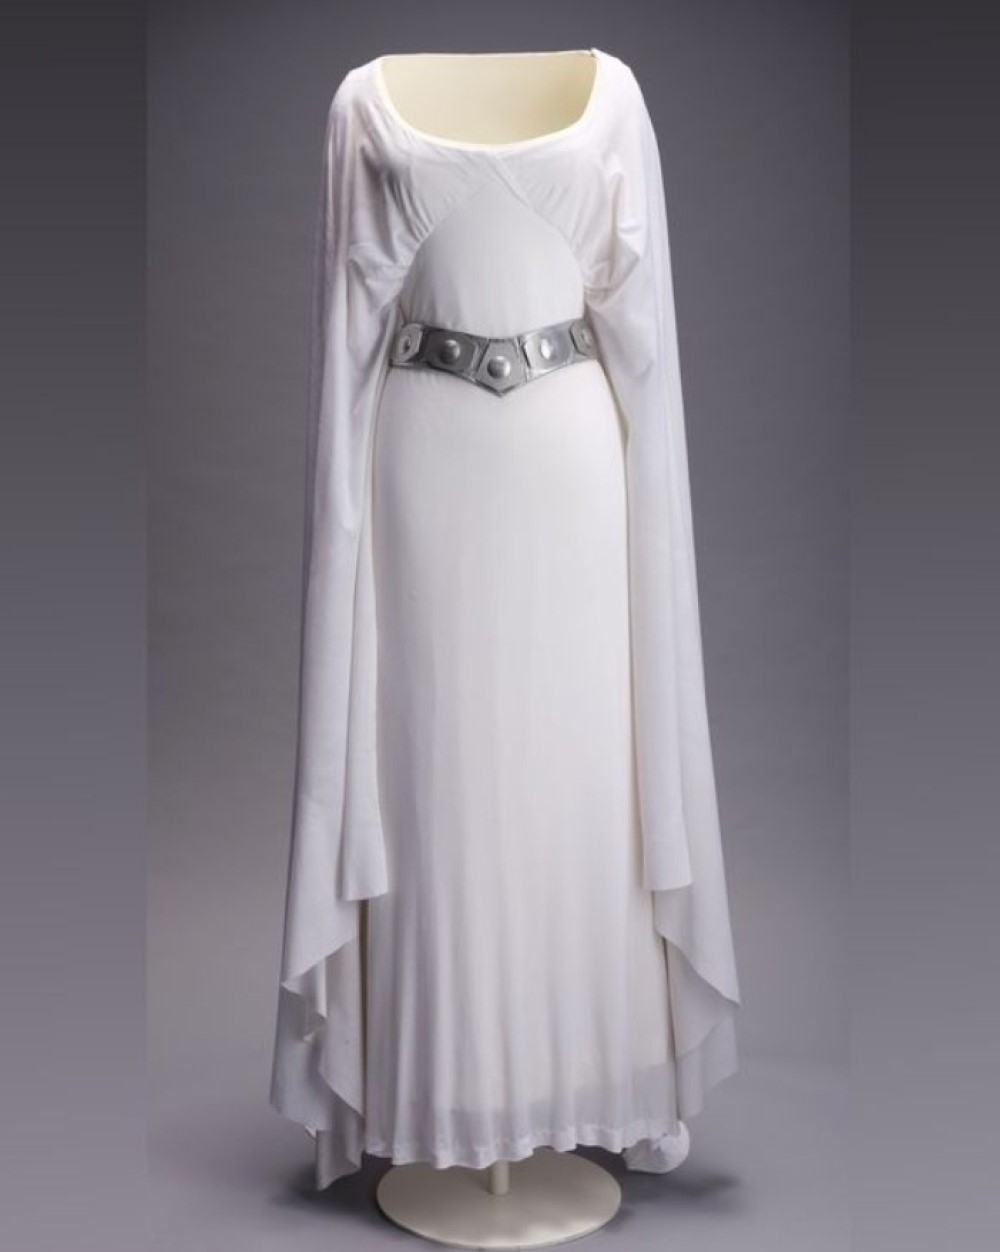 Платье принцессы Леи из фильма «Звездные войны: Эпизод 4 – Новая надежда» (1977) / Фото: Propstore Auction